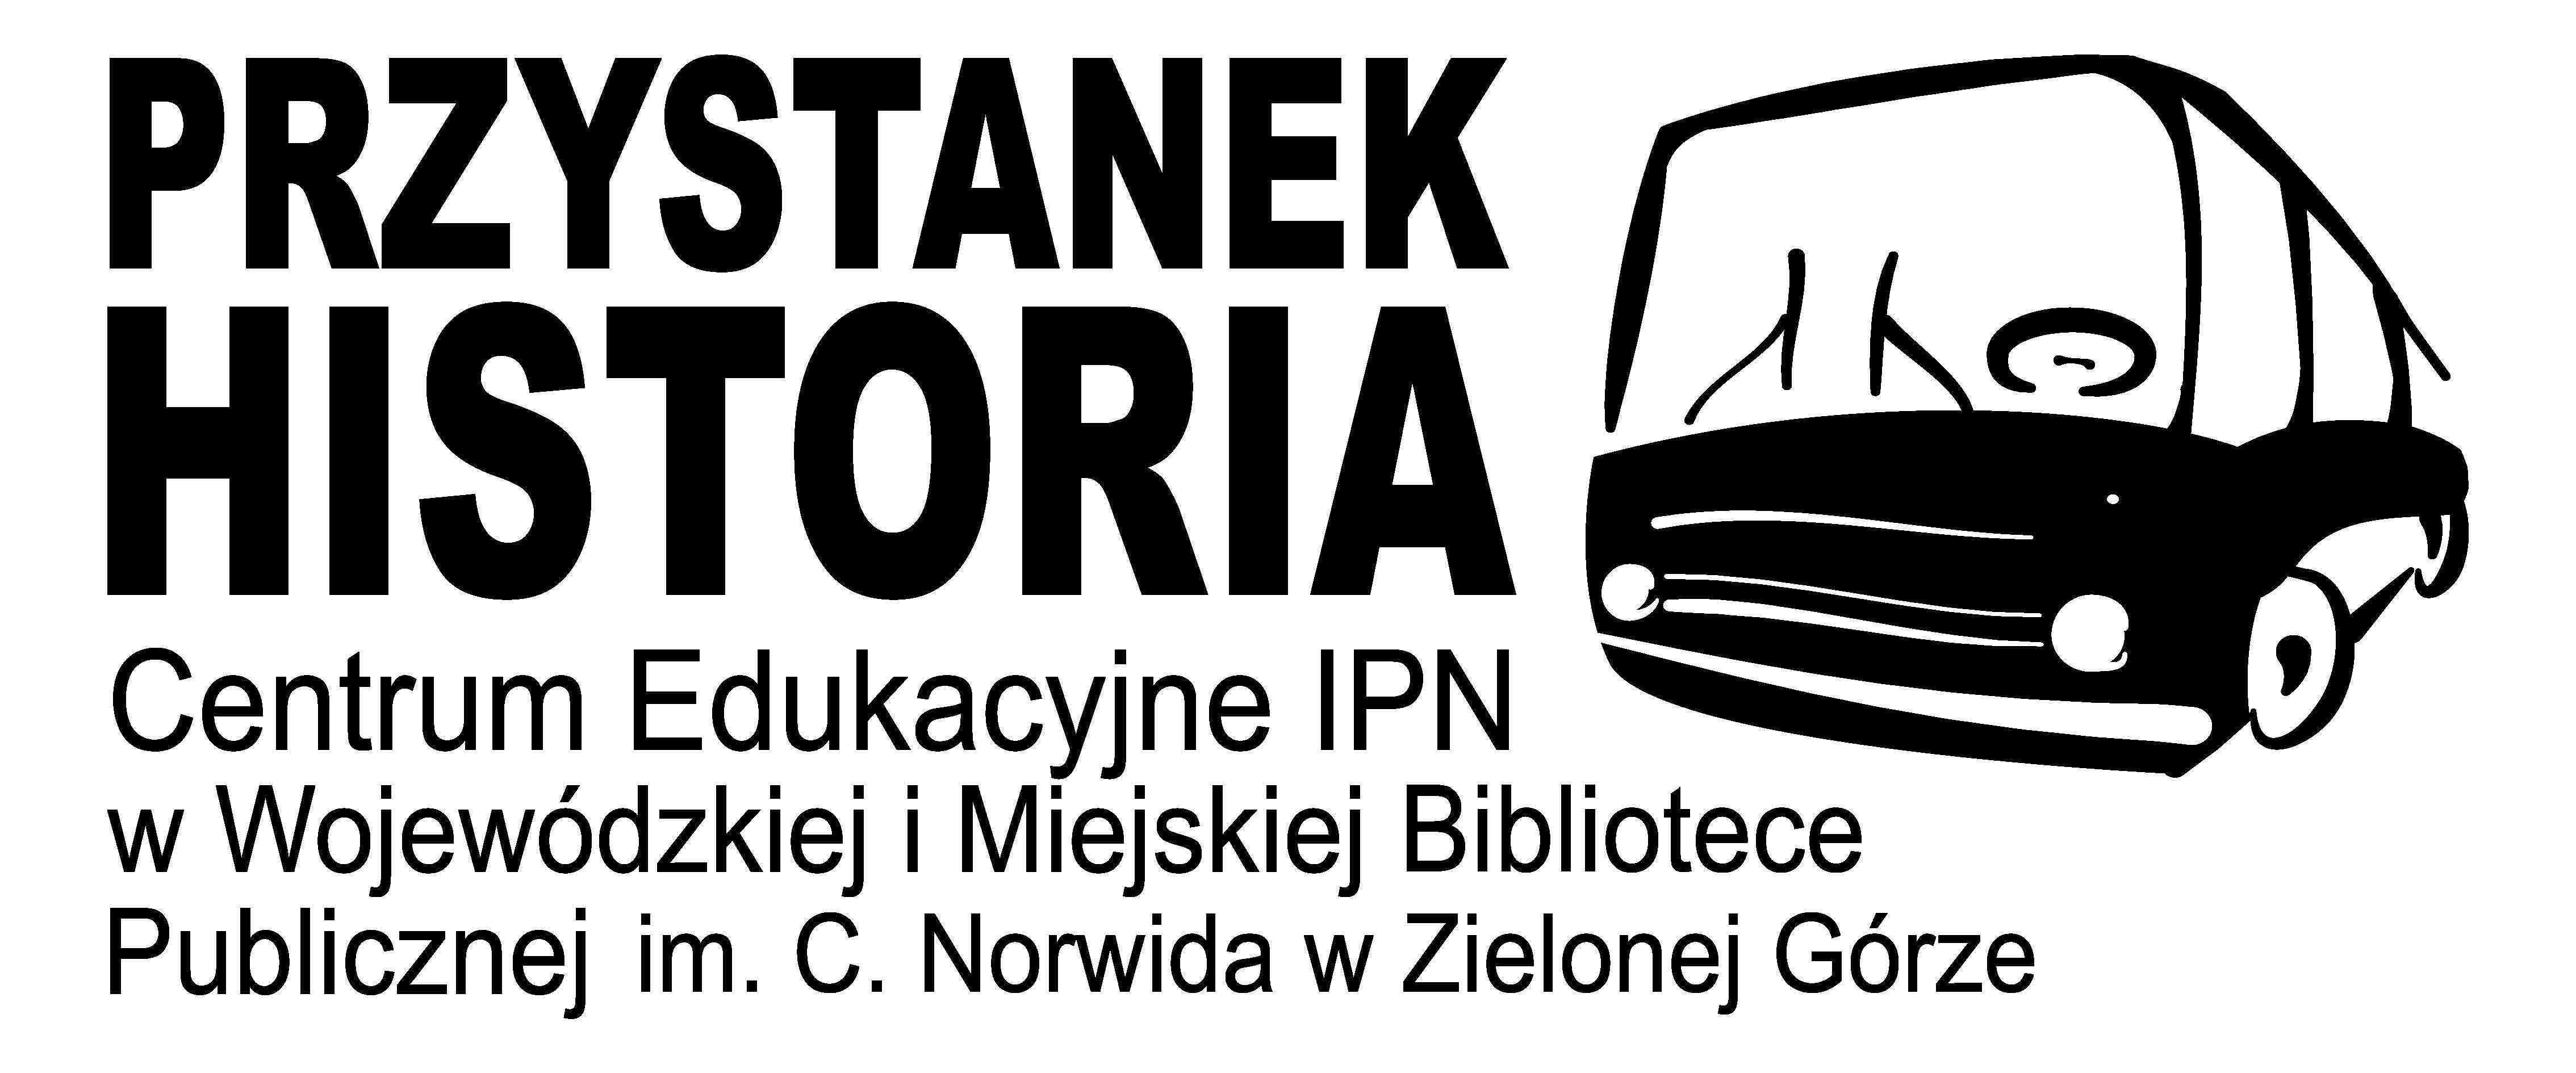 Centrum Edukacyjne IPN „Przystanek Historia” w Wojewódzkiej i Miejskiej Bibliotece Publicznej im. Cypriana Norwida